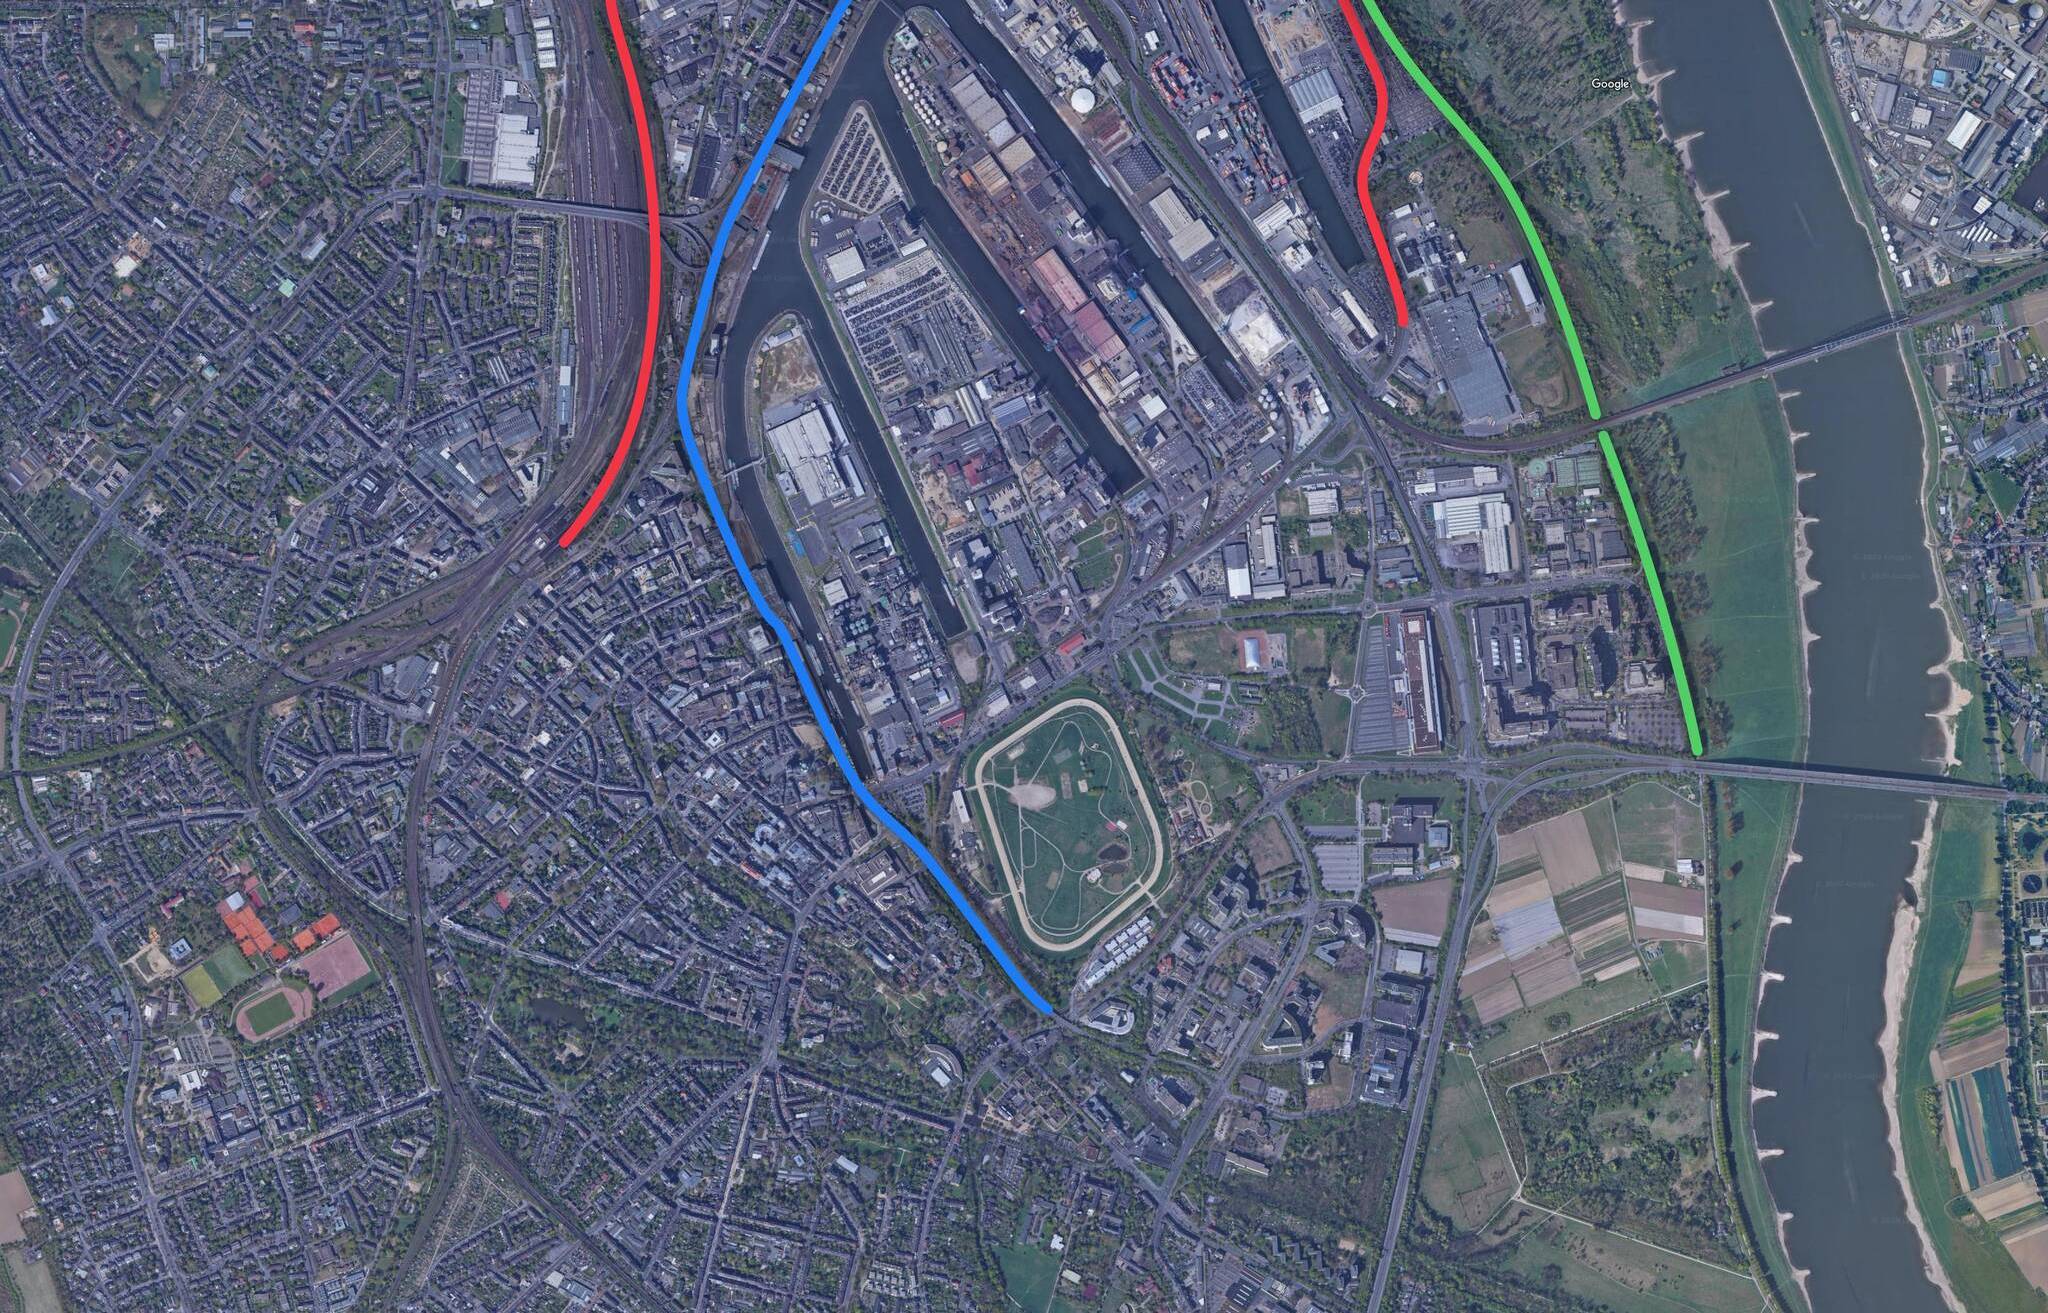  Durch die neue Hubbrücke II könnte die Gleisinfrastruktur des Hafens verbessert (rote Linie) sowie das Radwegenetz ausgebaut (grüne Linie) werden und die Trasse des Notgleises Platz für die Straßenbahn machen (blaue Linie). 